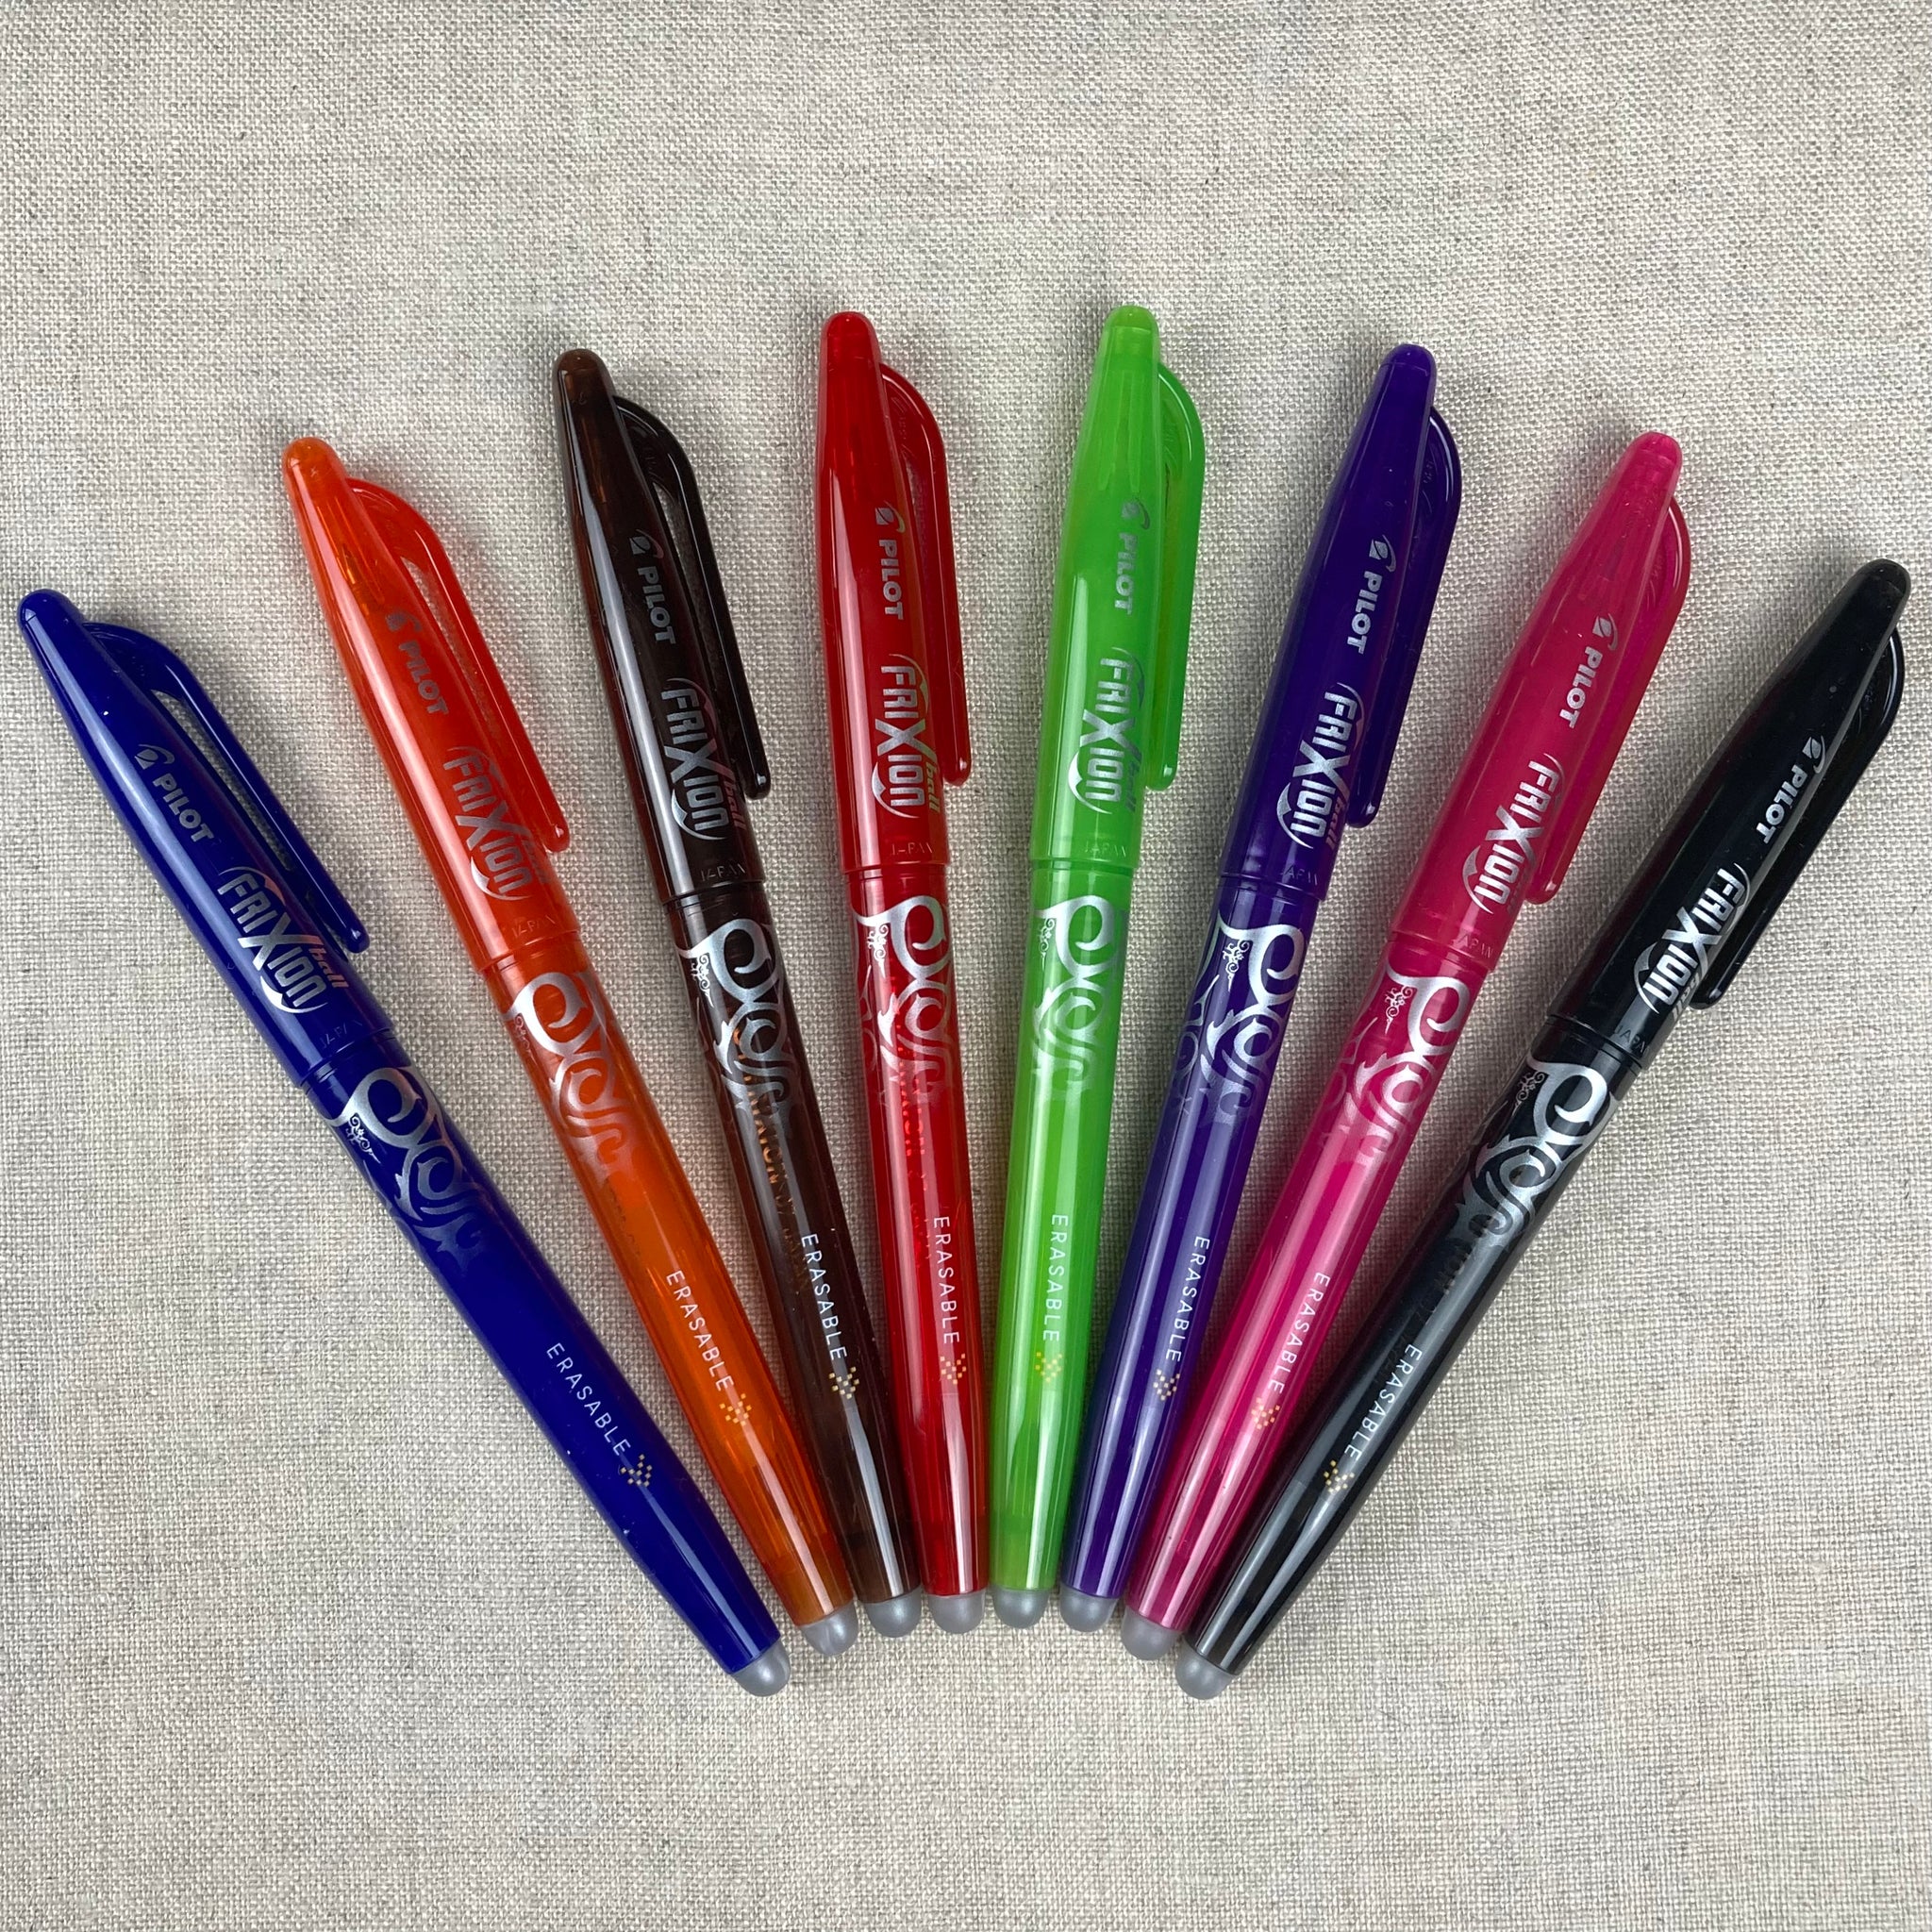 Pilot FriXion Erasable Gel Pens, Fine Point, 0.7 mm, Assorted Colors - 3 pack